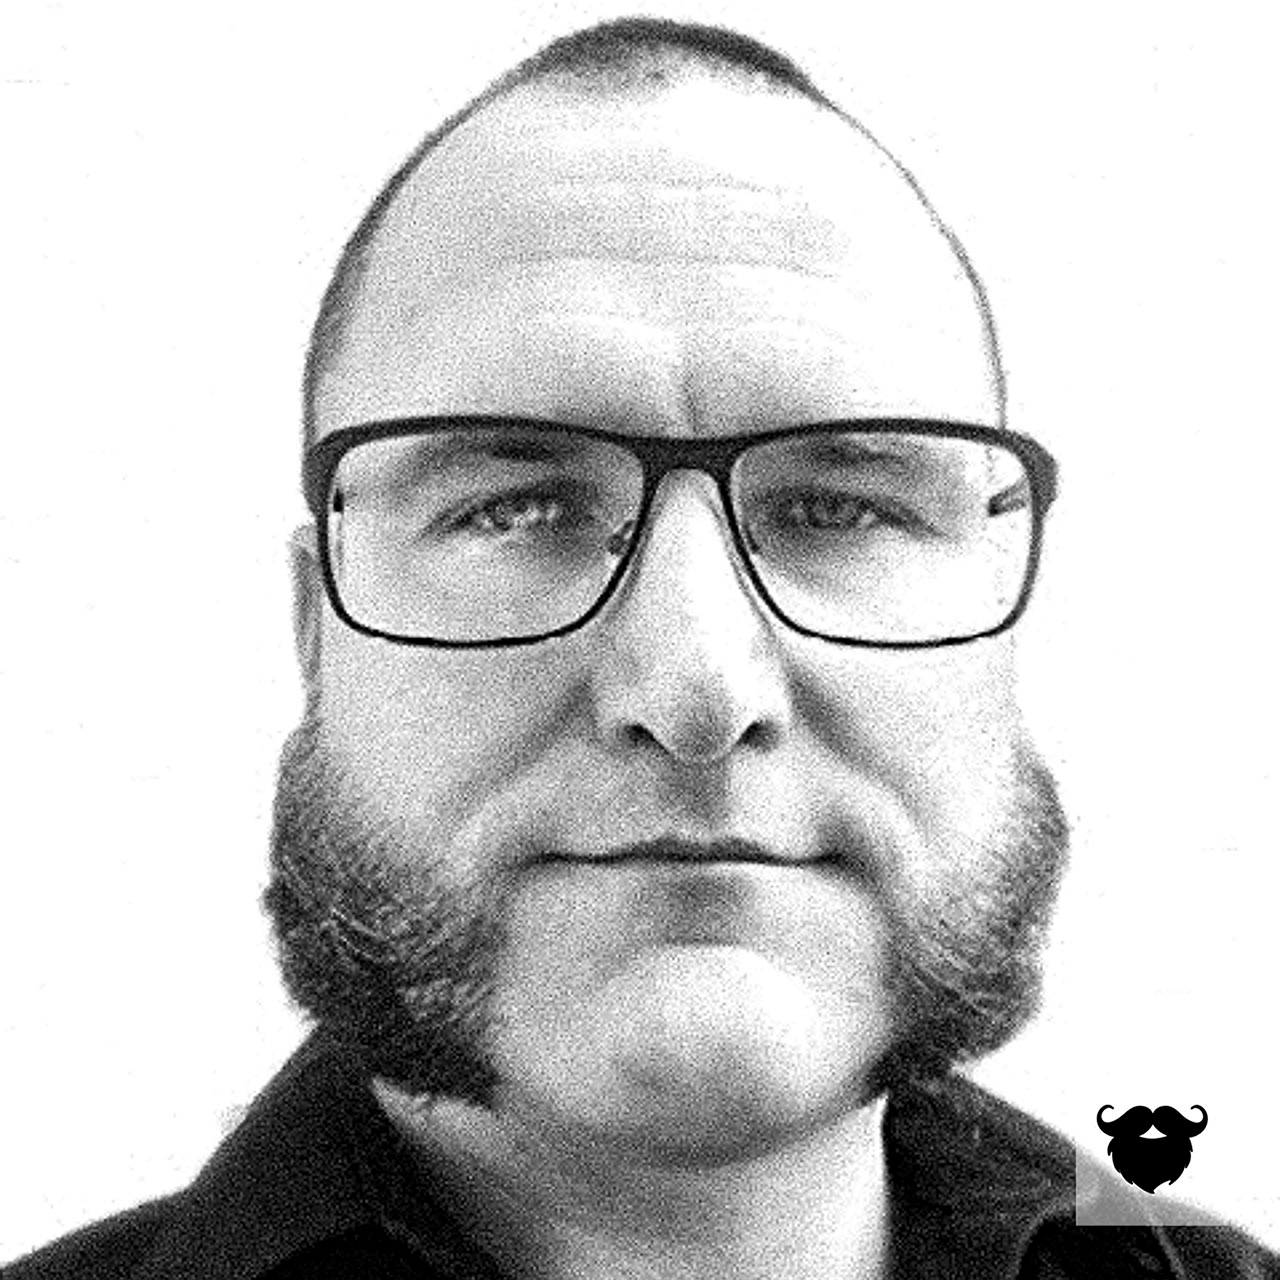 André mit klassischem Backenbart ♥ Ratgeber für das optimale Styling deines Bartes findest du auf blackbeards.de.